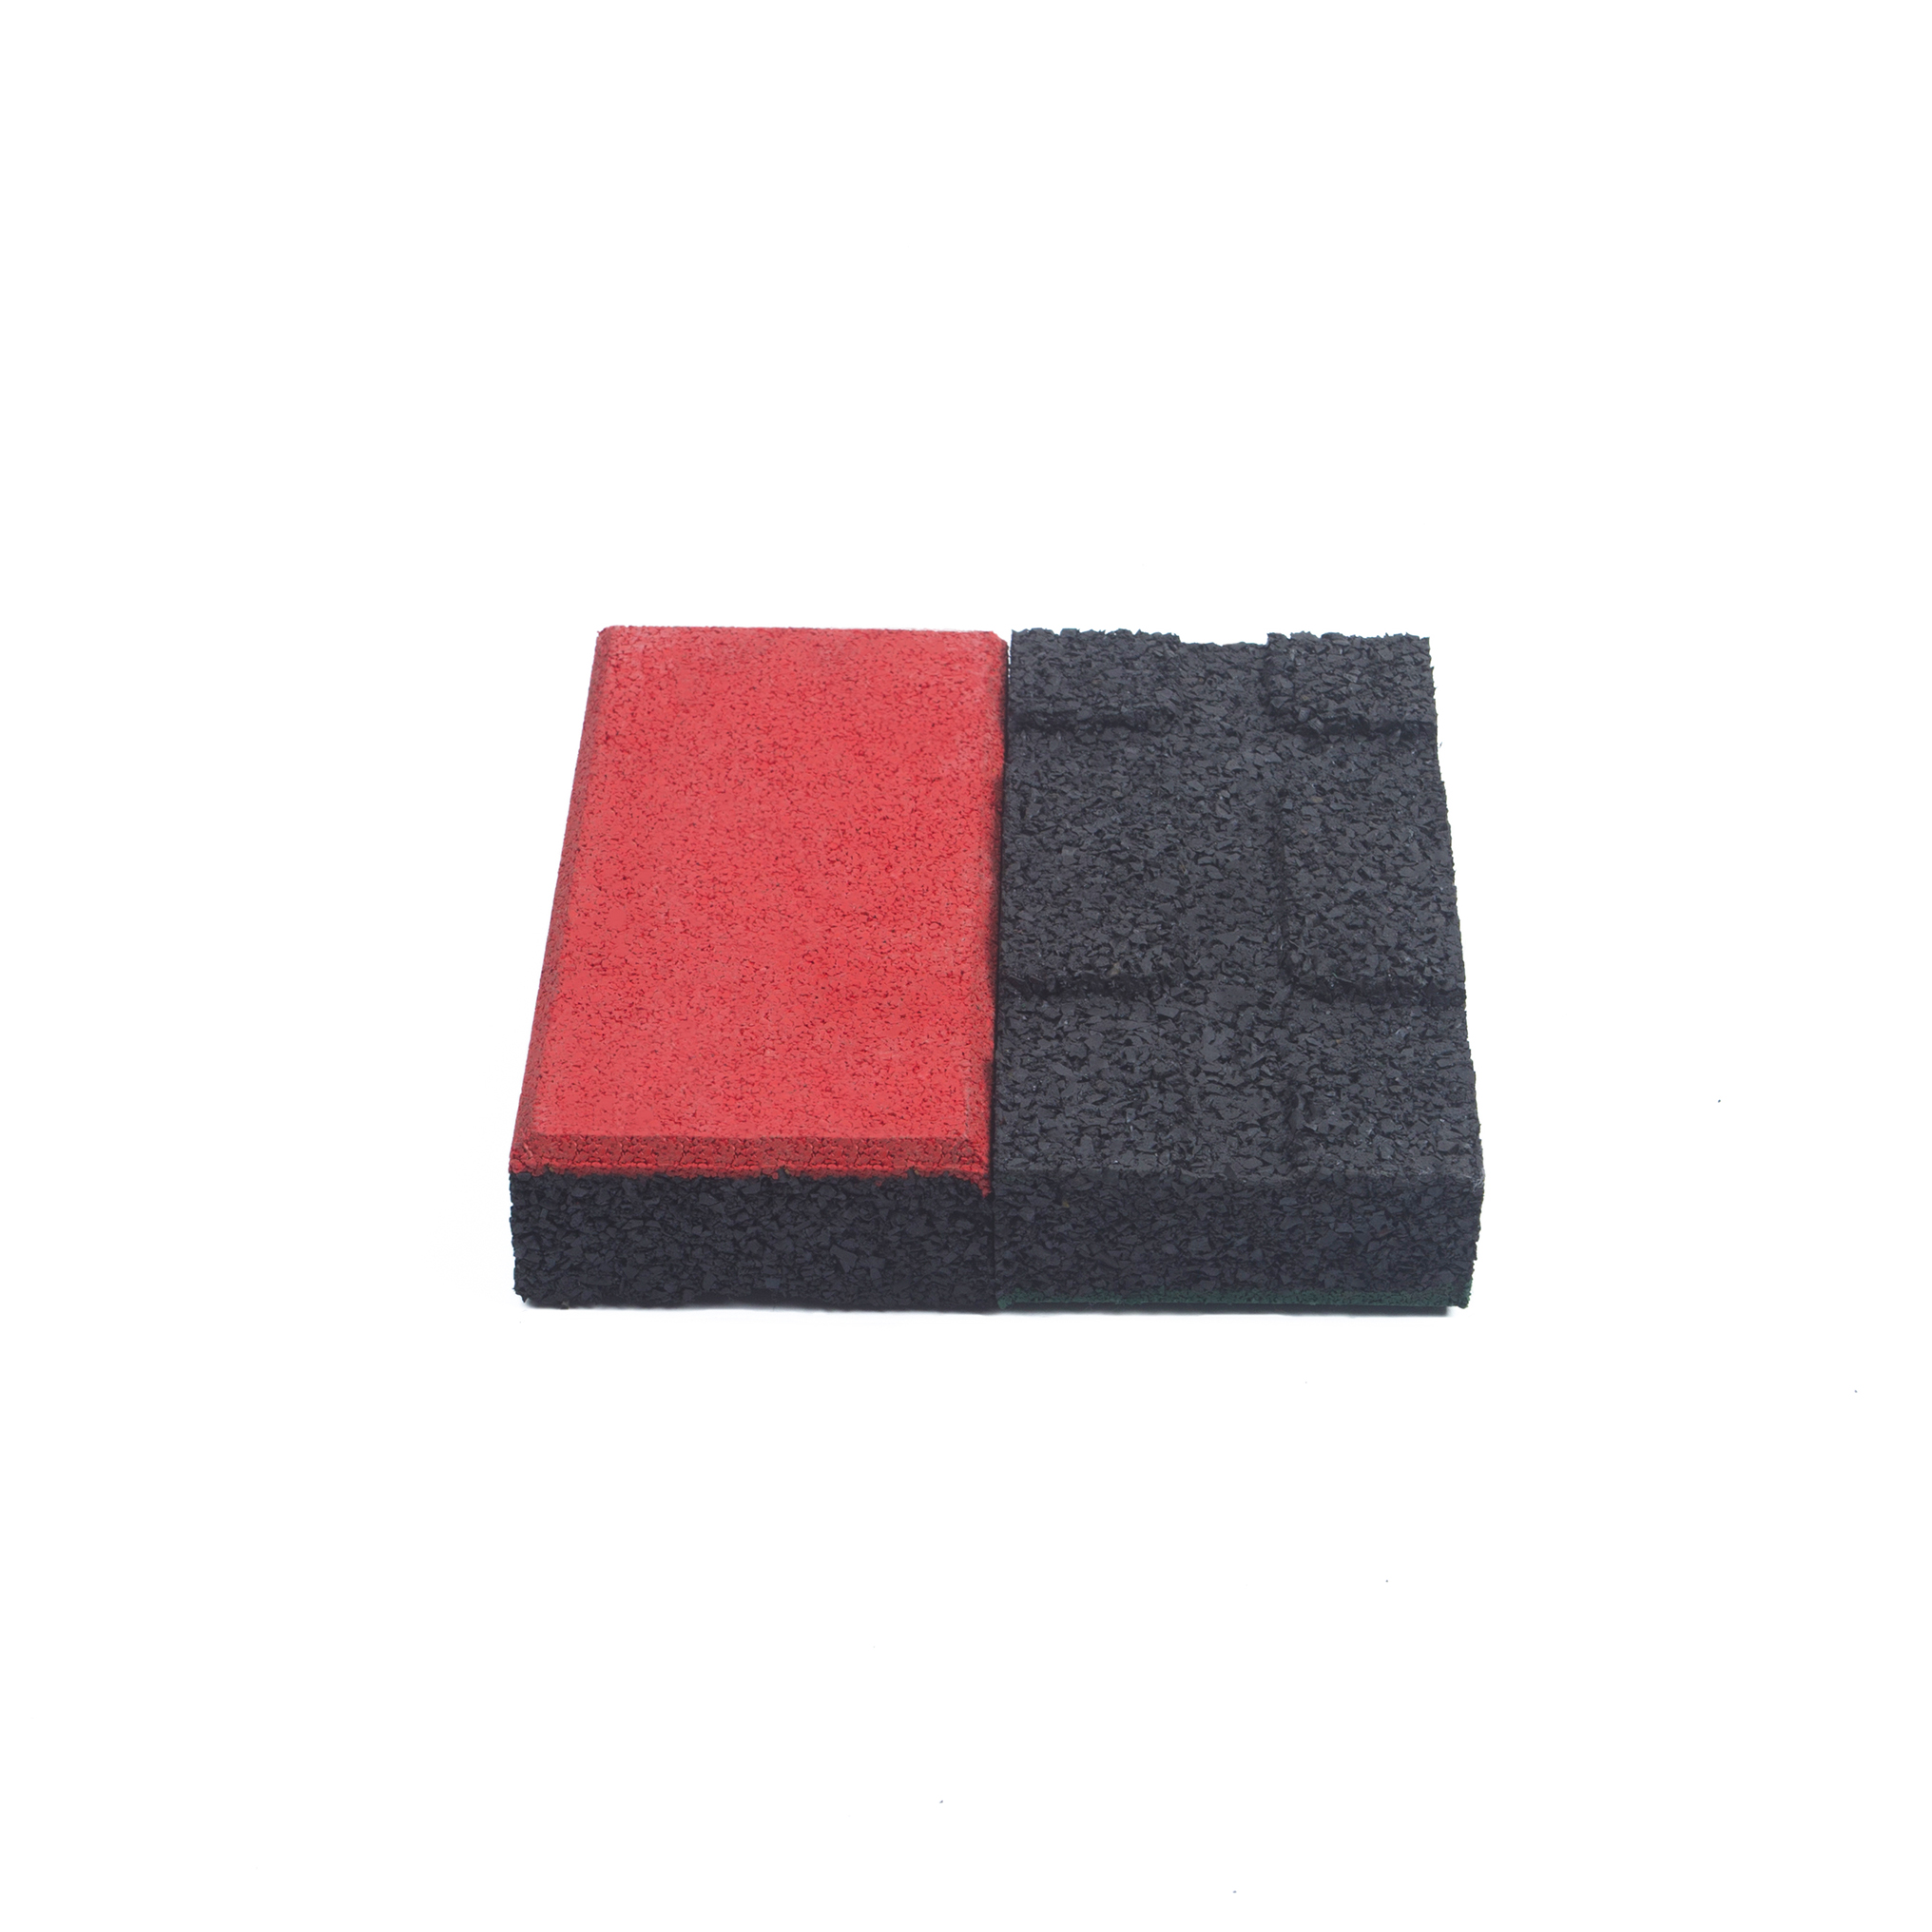 Brick Tile(T-GR-B-EBS)